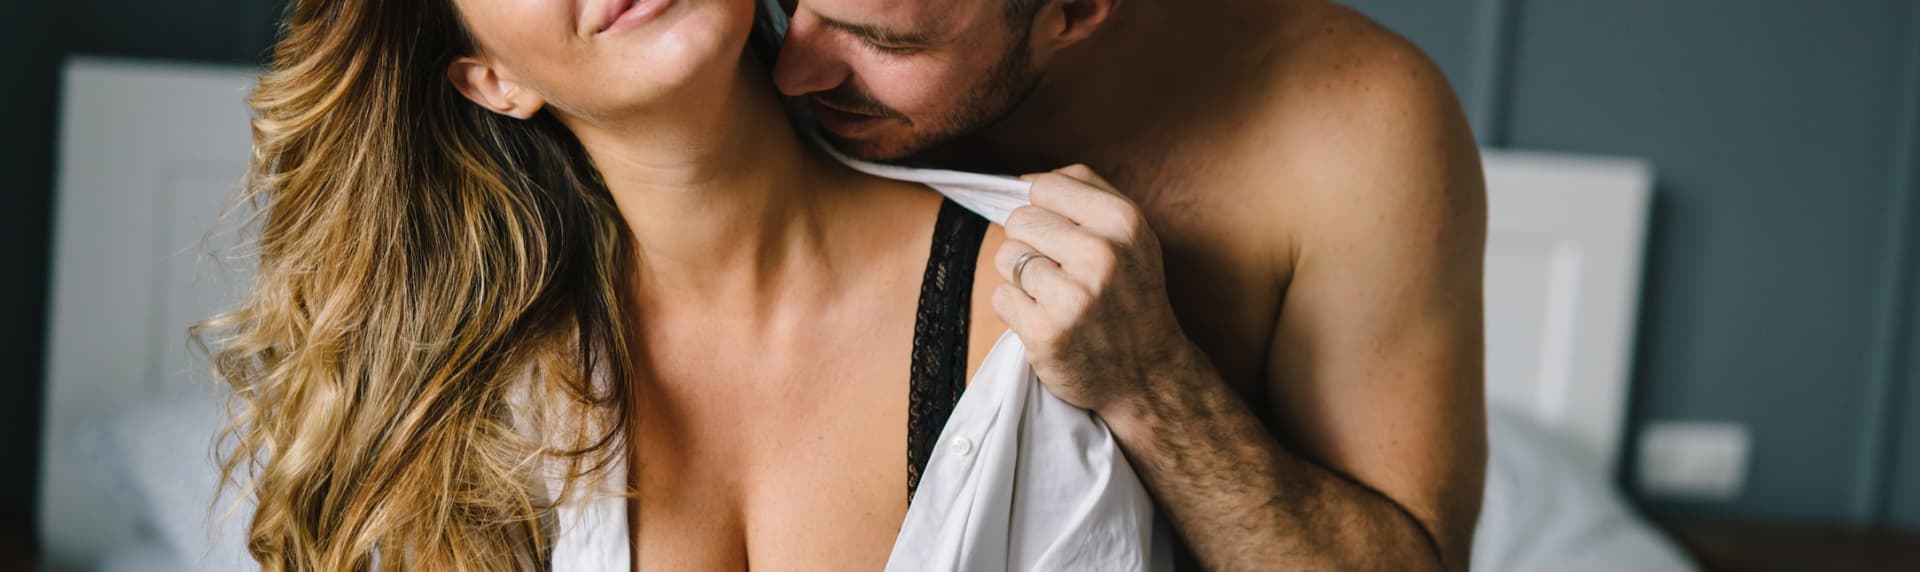 Секс знакомства в Твери » Интим объявления 🔥 SexKod (18+)